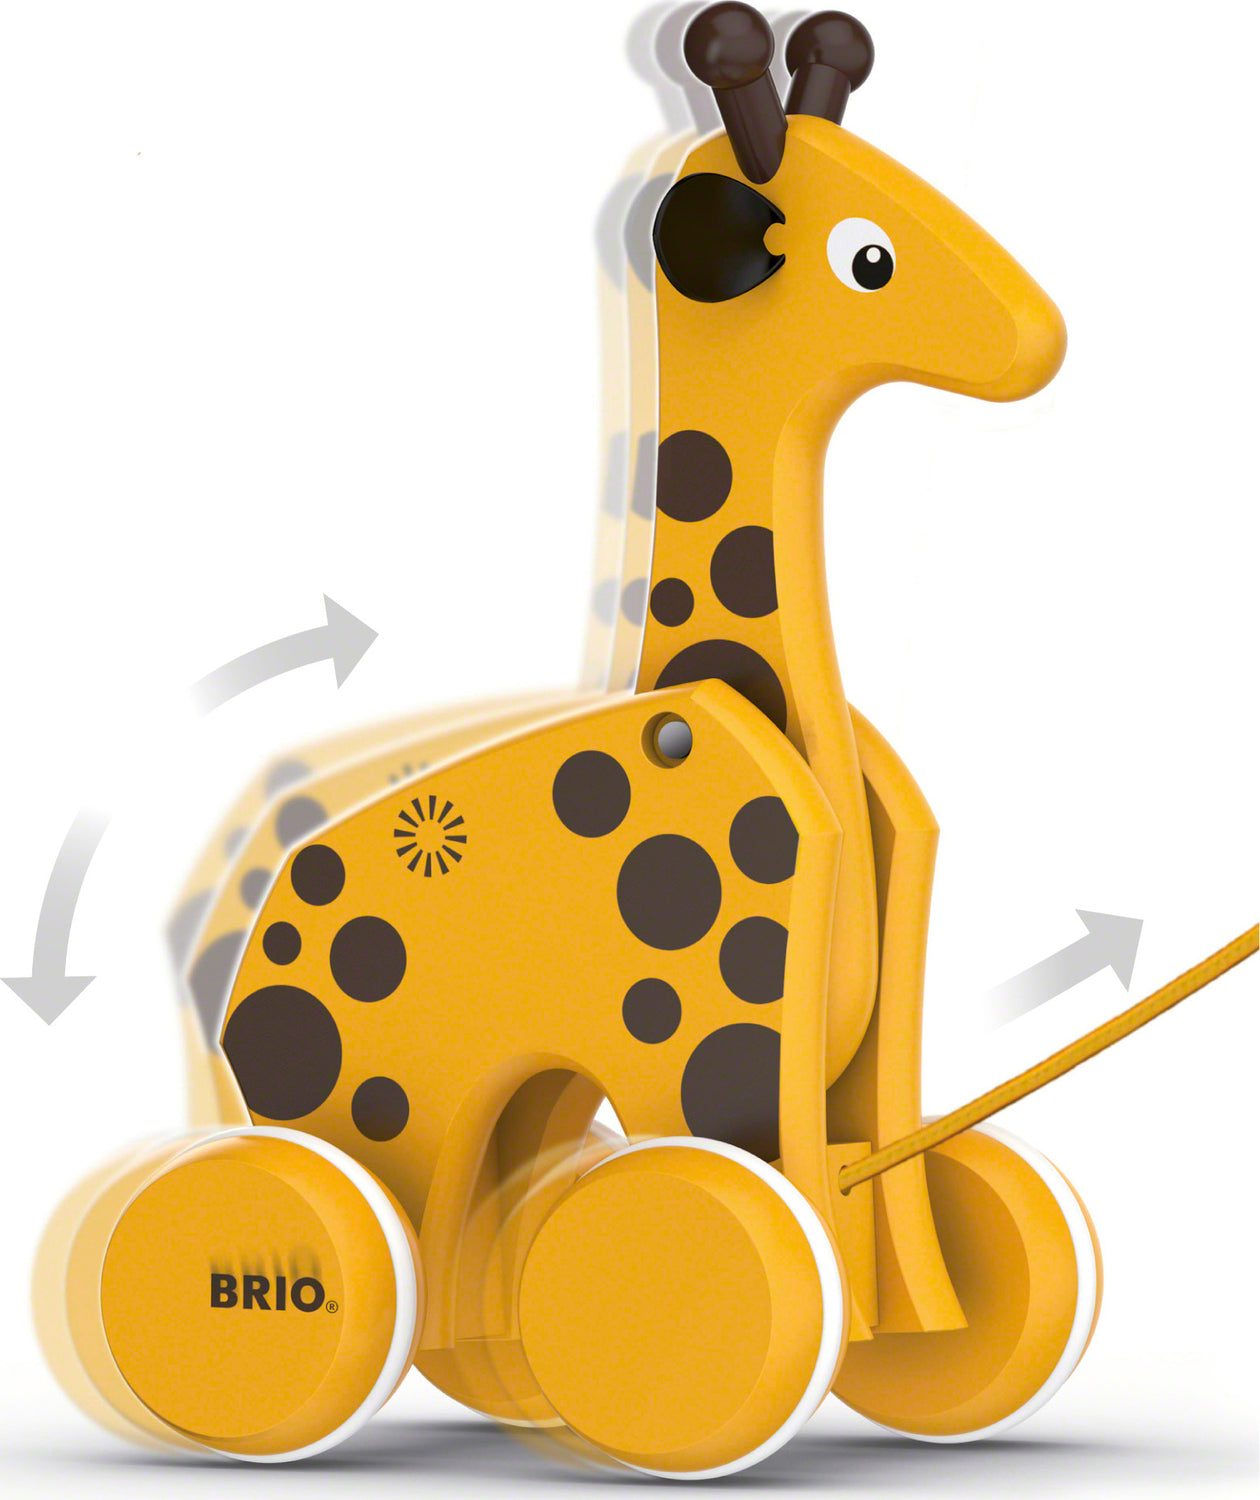 BRIO Pull Along Giraffe